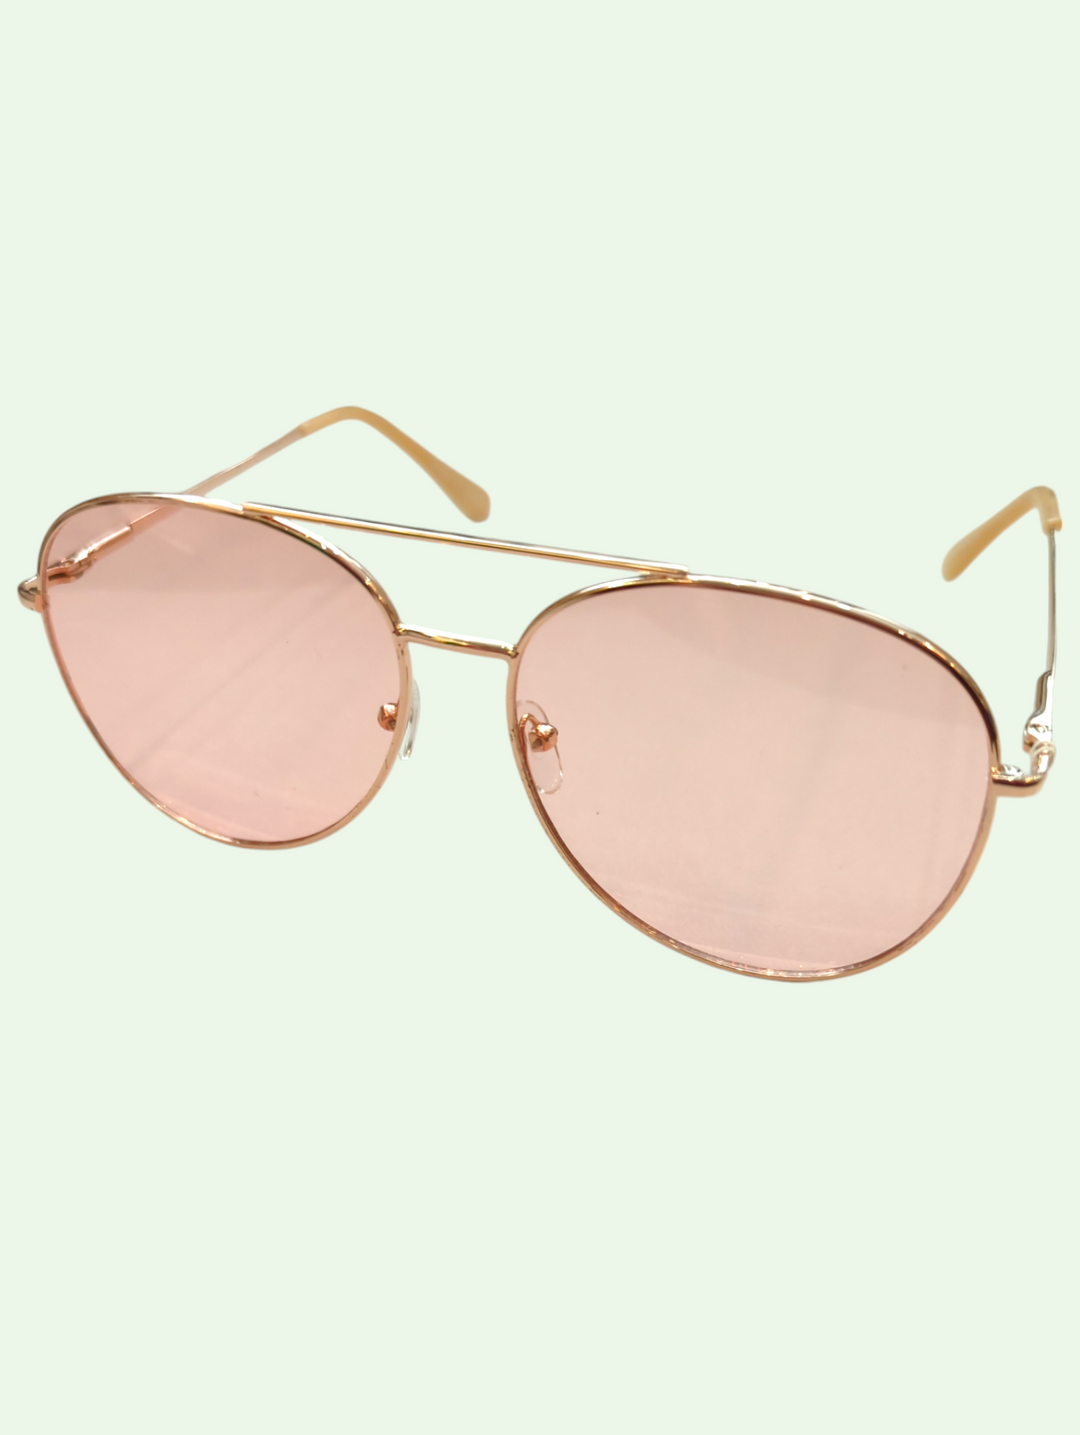 summer dream aviator glasses in rose